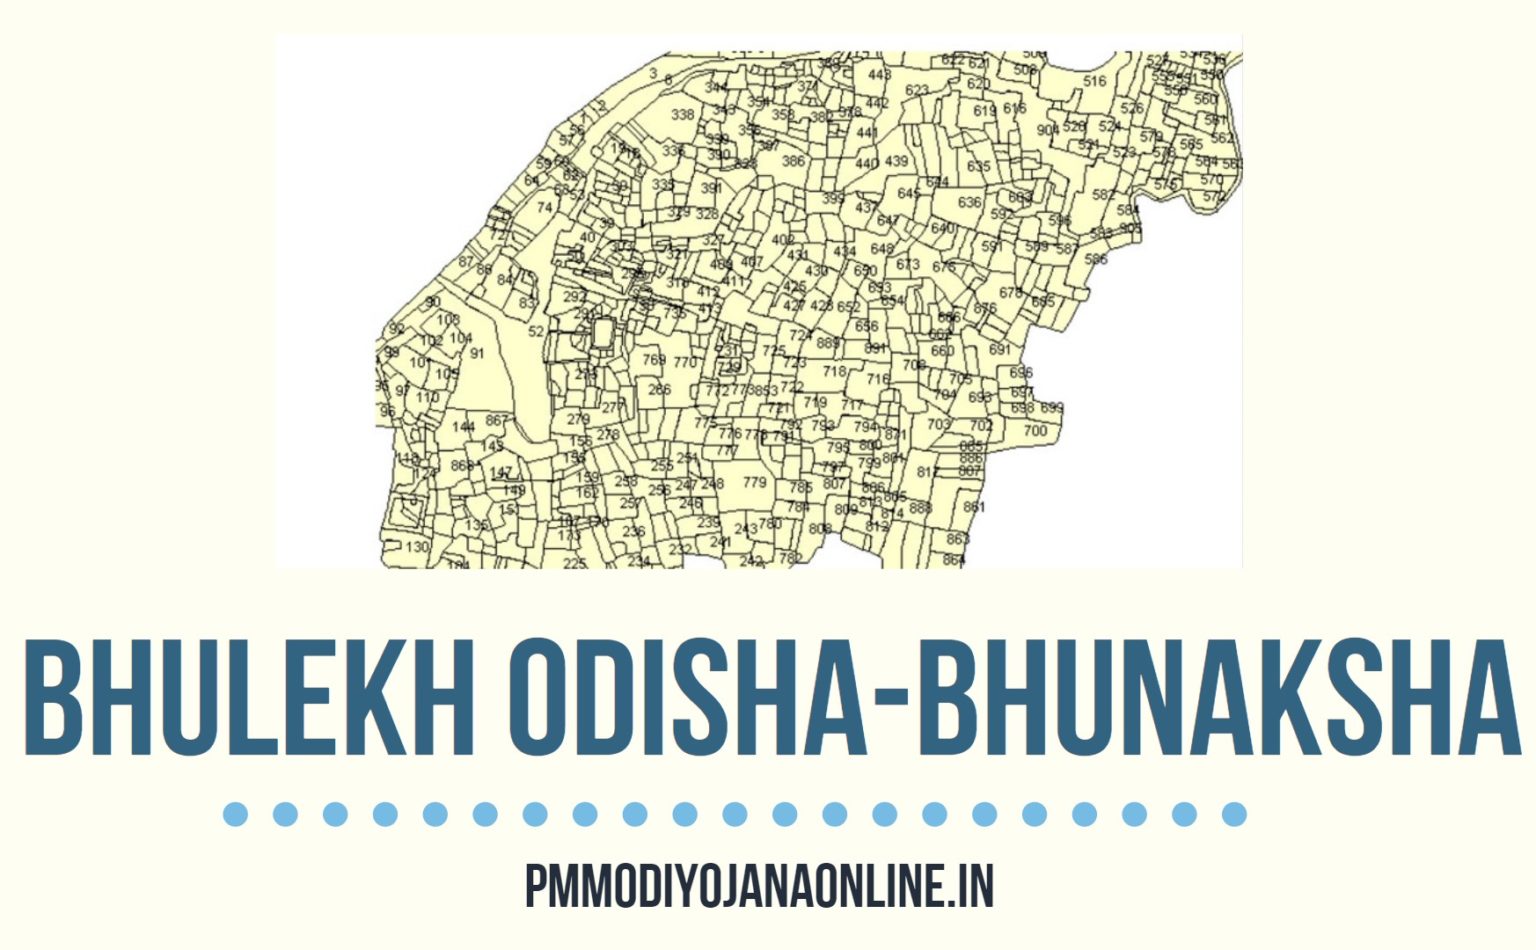 bhulekh orissa map